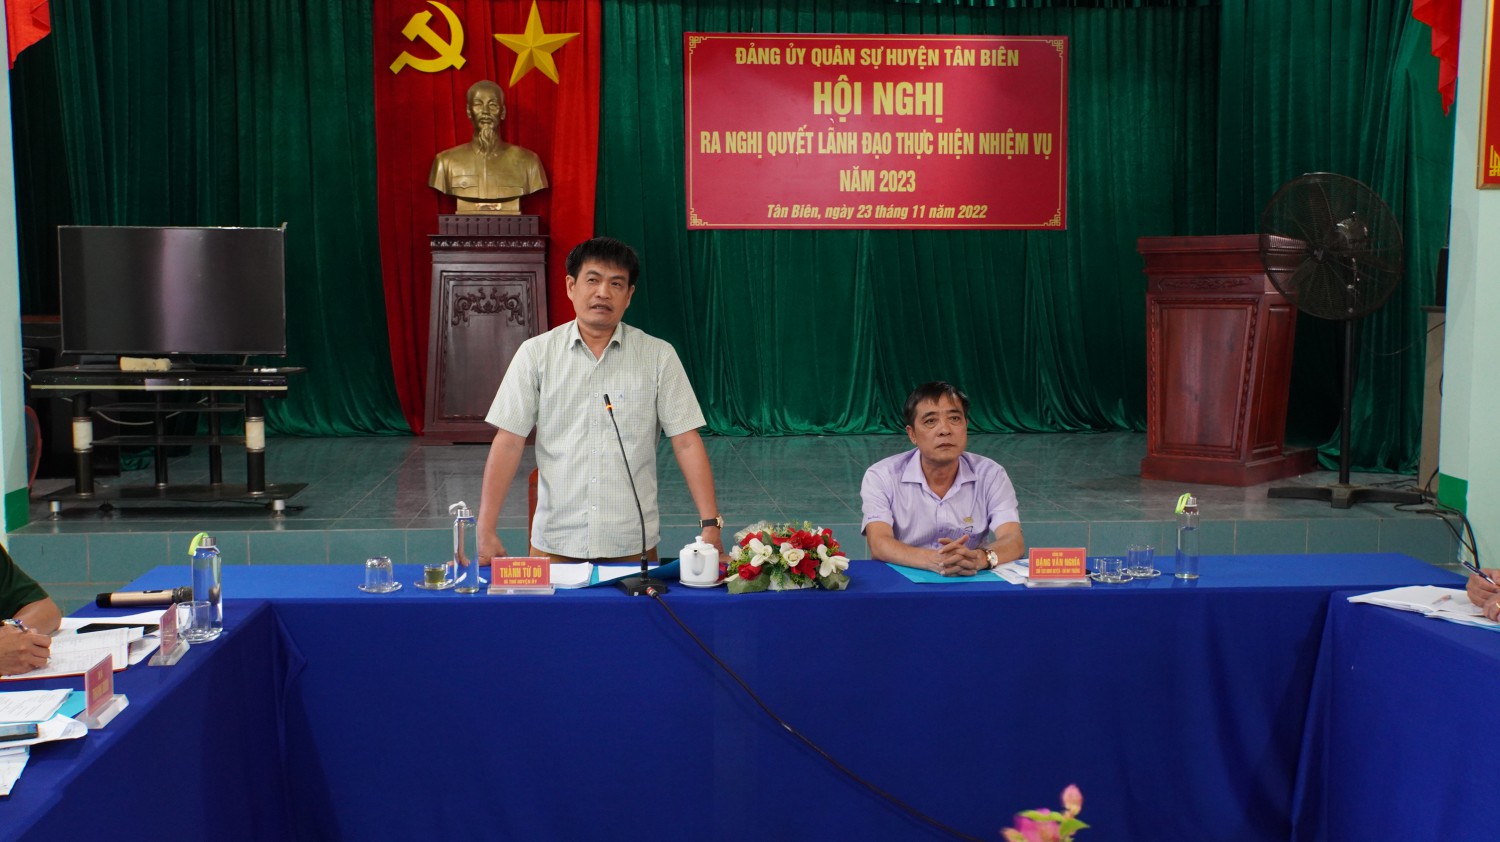 Đảng ủy quân sự huyện Tân Biên ra nghị quyết lãnh đạo thực hiện nhiệm vụ năm 2023.